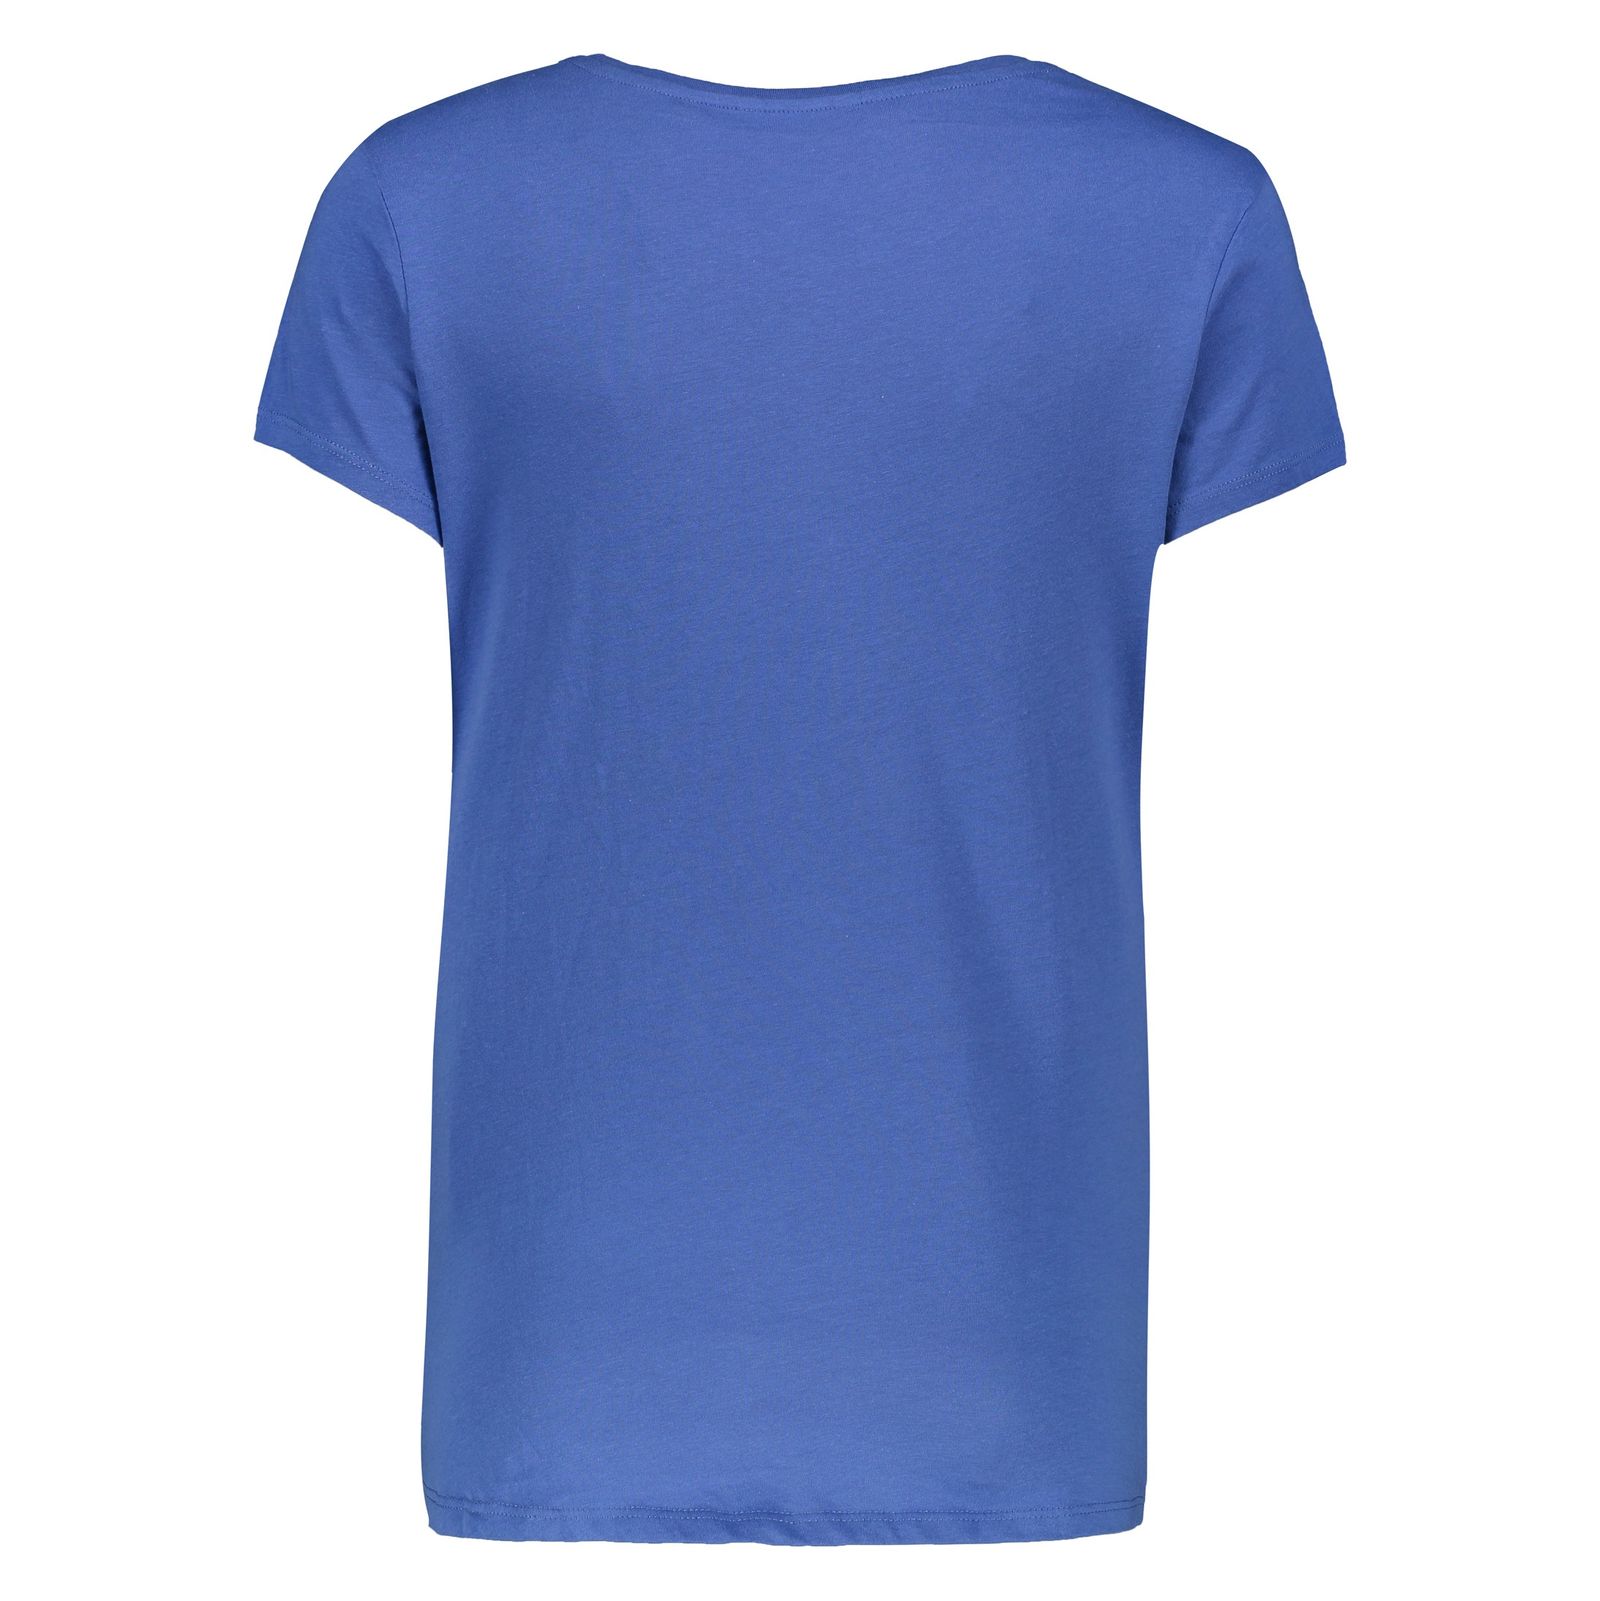 تی شرت زنانه اسپرینگ فیلد مدل 1383531-Blue - آبی - 3